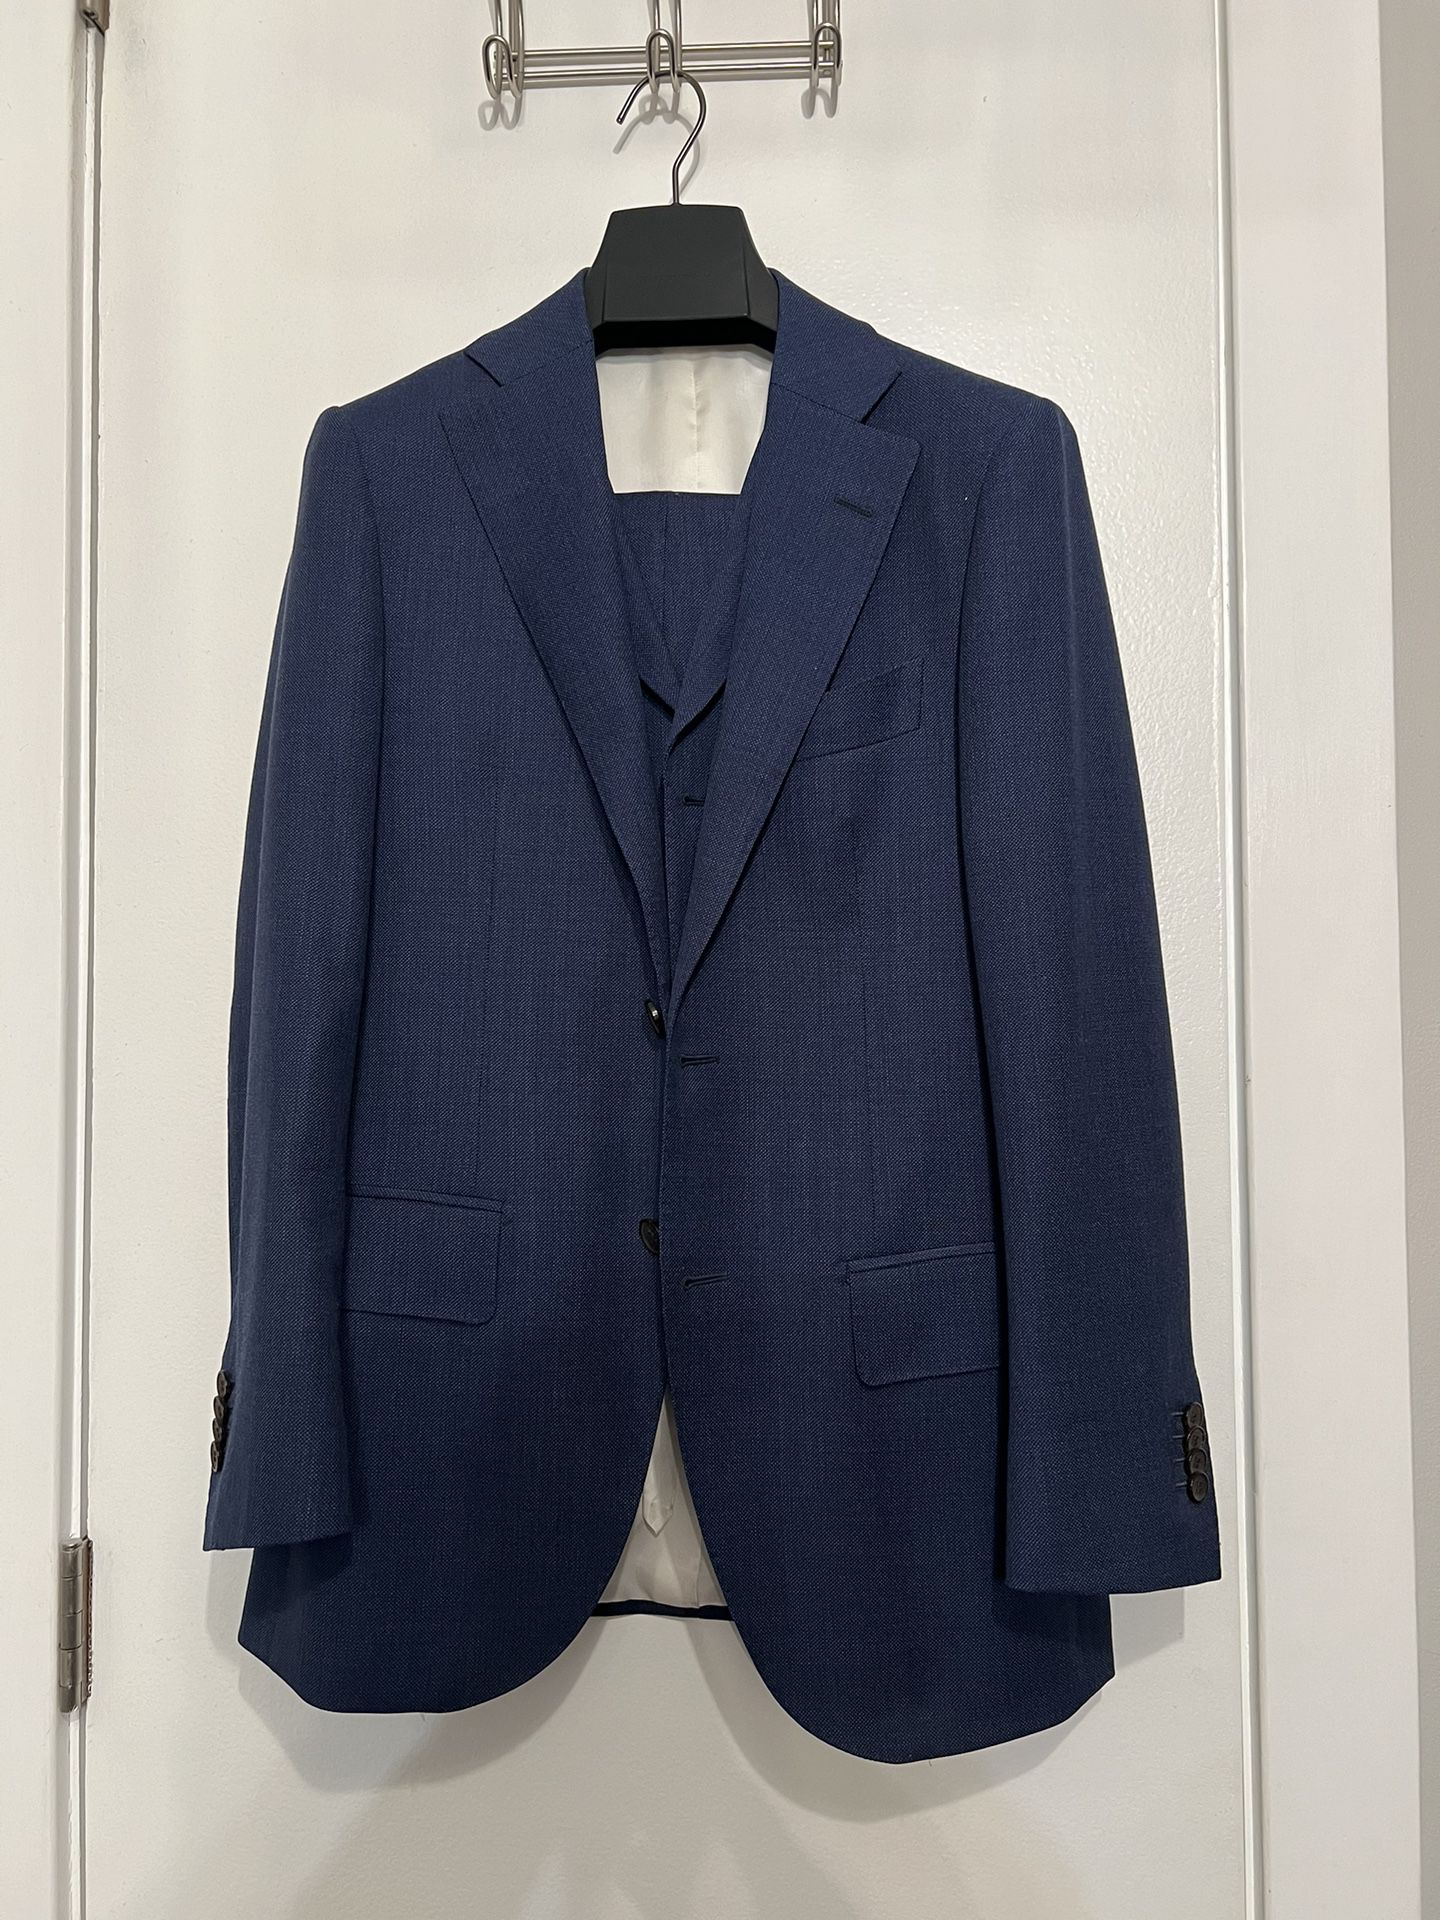 Suitsupply Lazio 3-Piece Suit 